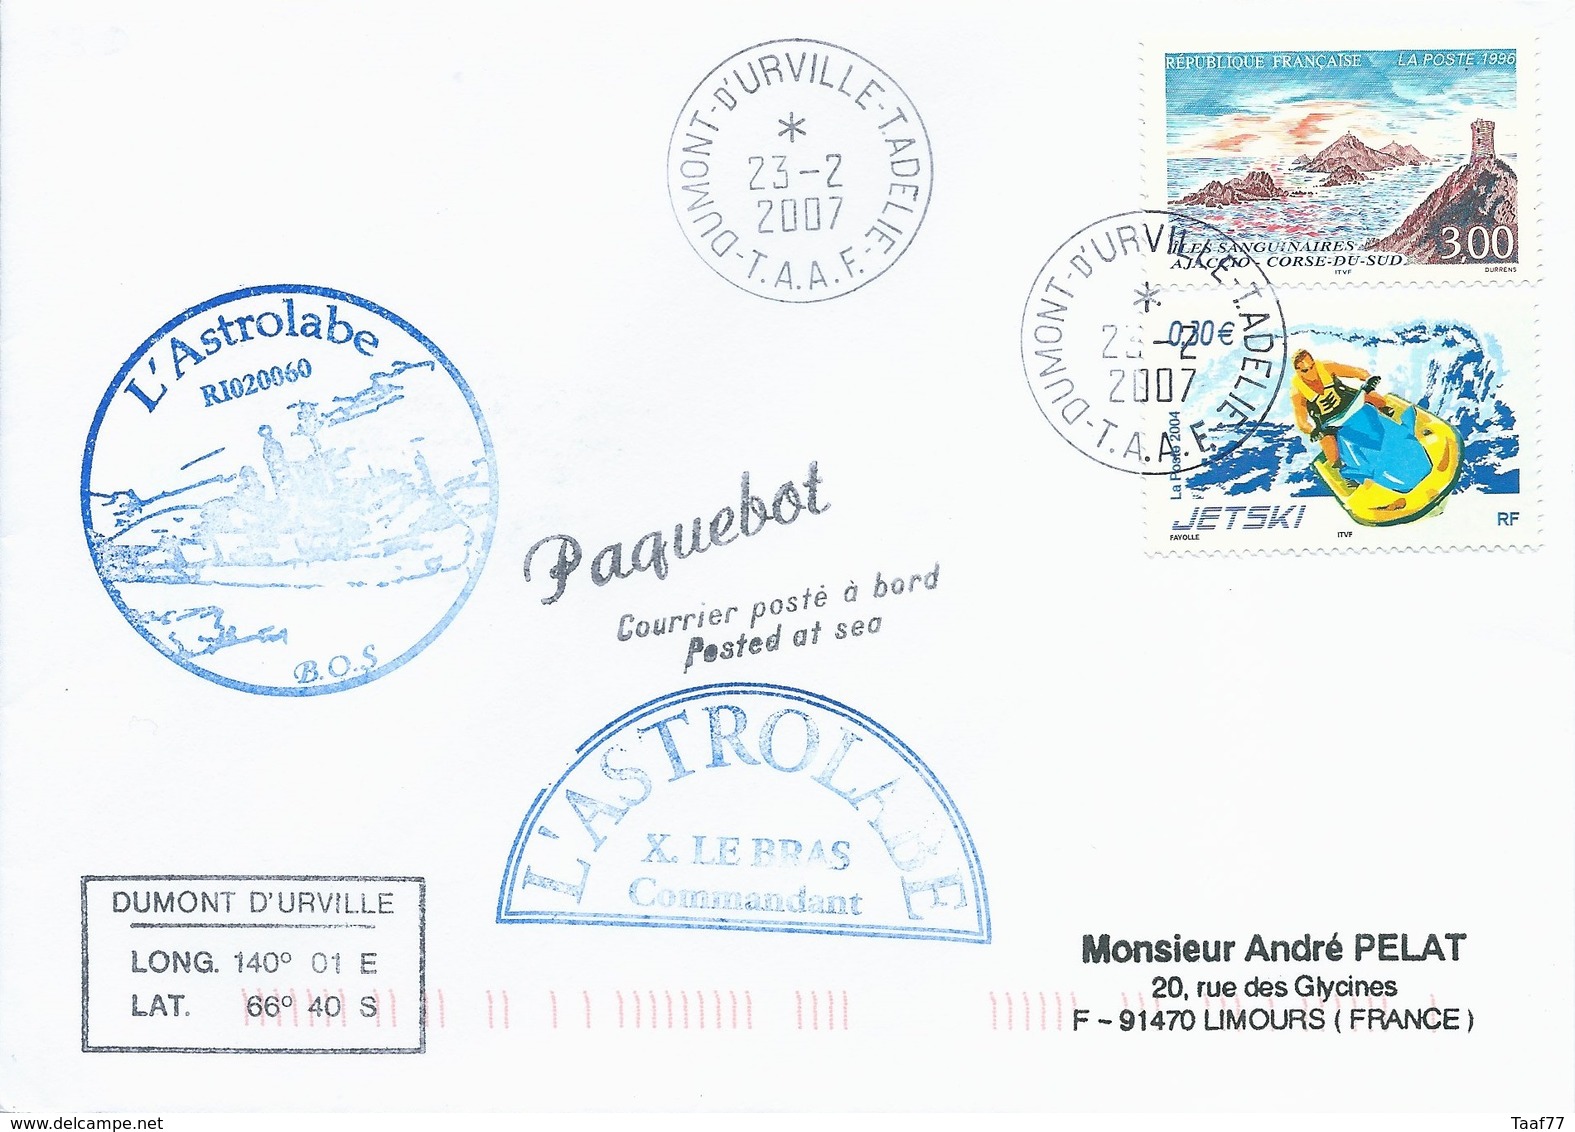 TAAF - Dumont D'Urville-T.Adélie: Lettre "L'Astrobale" Avec France N°3019 Iles Sanguinaires Et 3698 Jetski - 23/02/2007 - Lettres & Documents